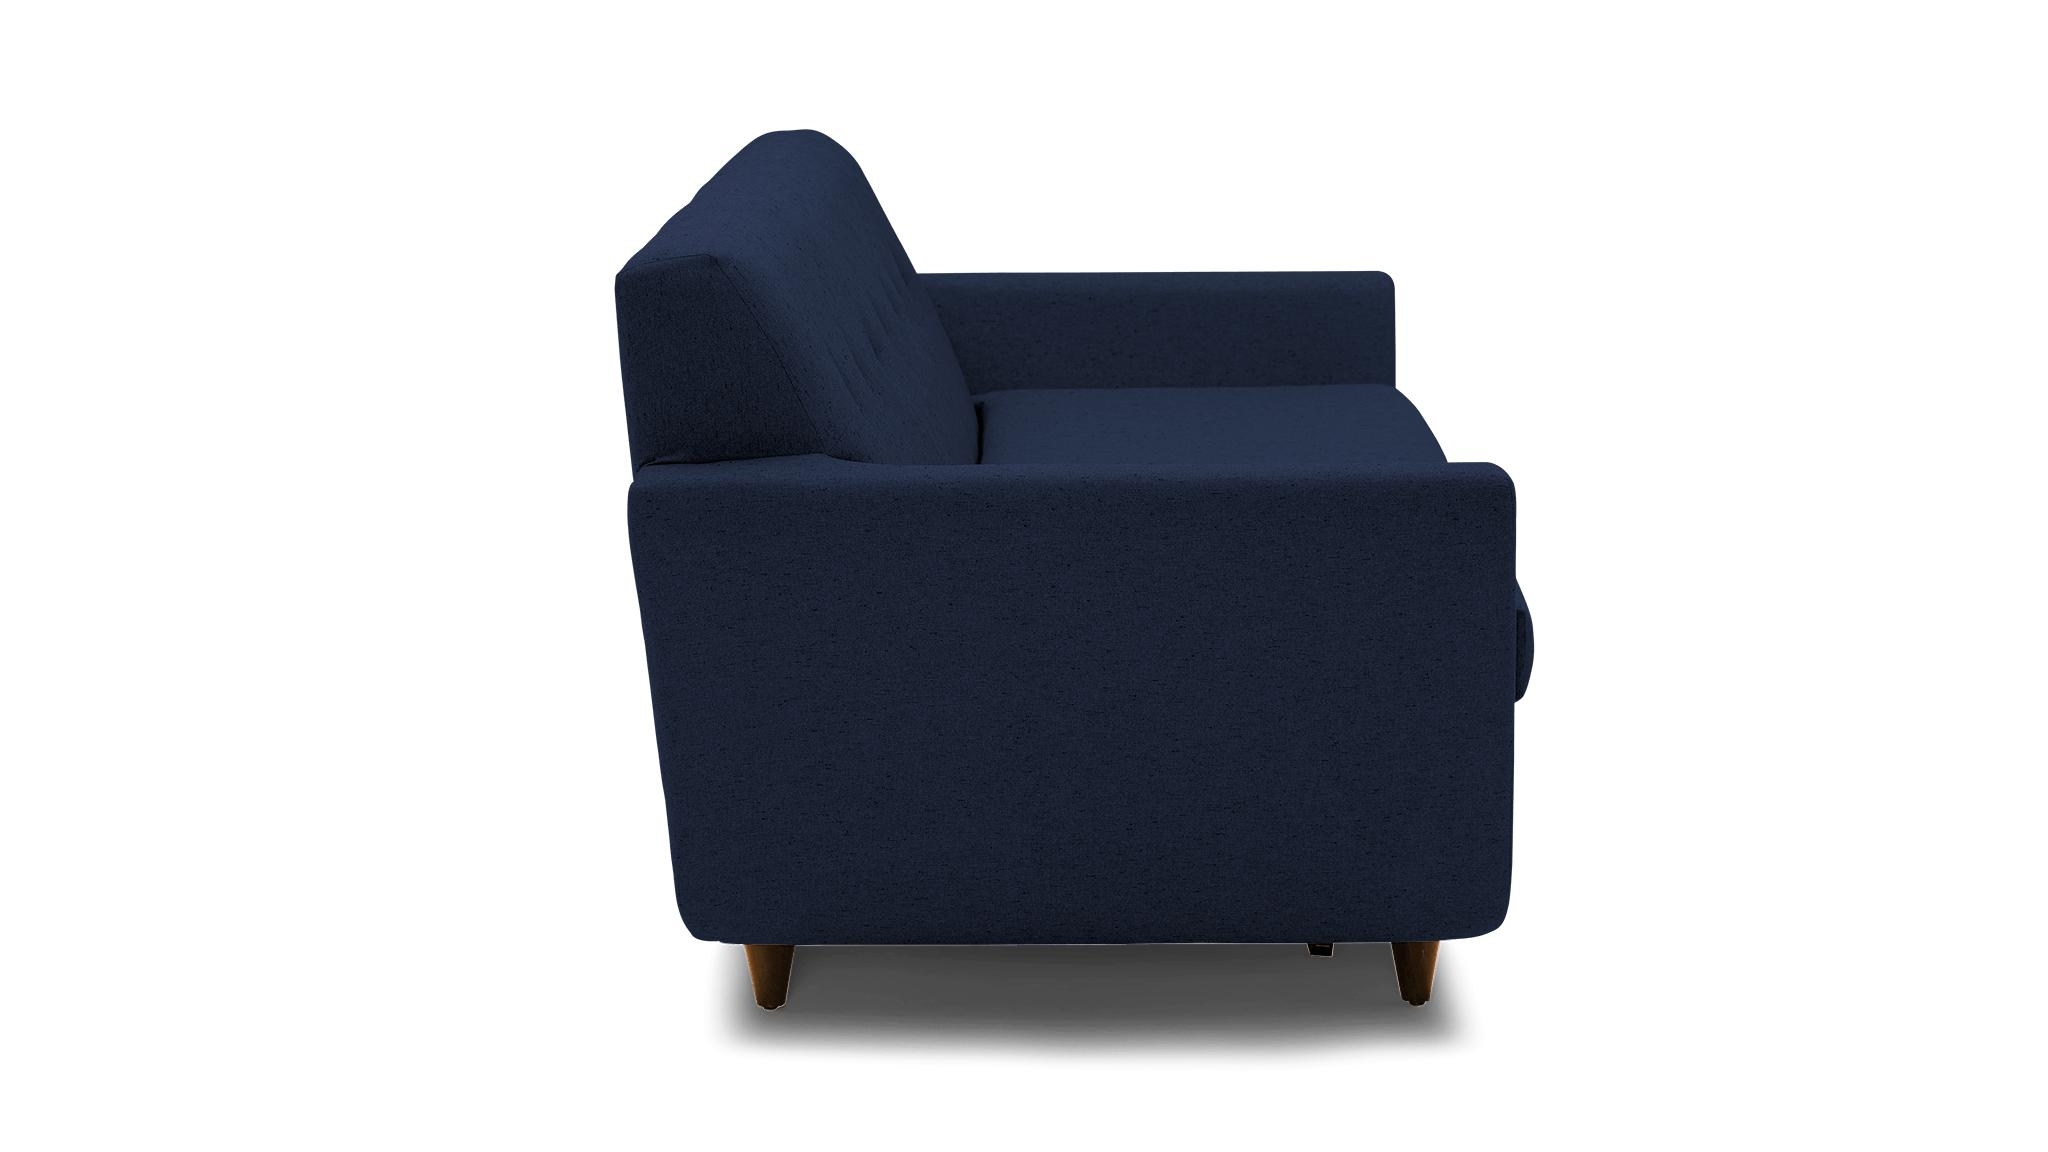 Blue Hughes Mid Century Modern Sleeper Sofa - Bentley Indigo - Mocha - Image 2